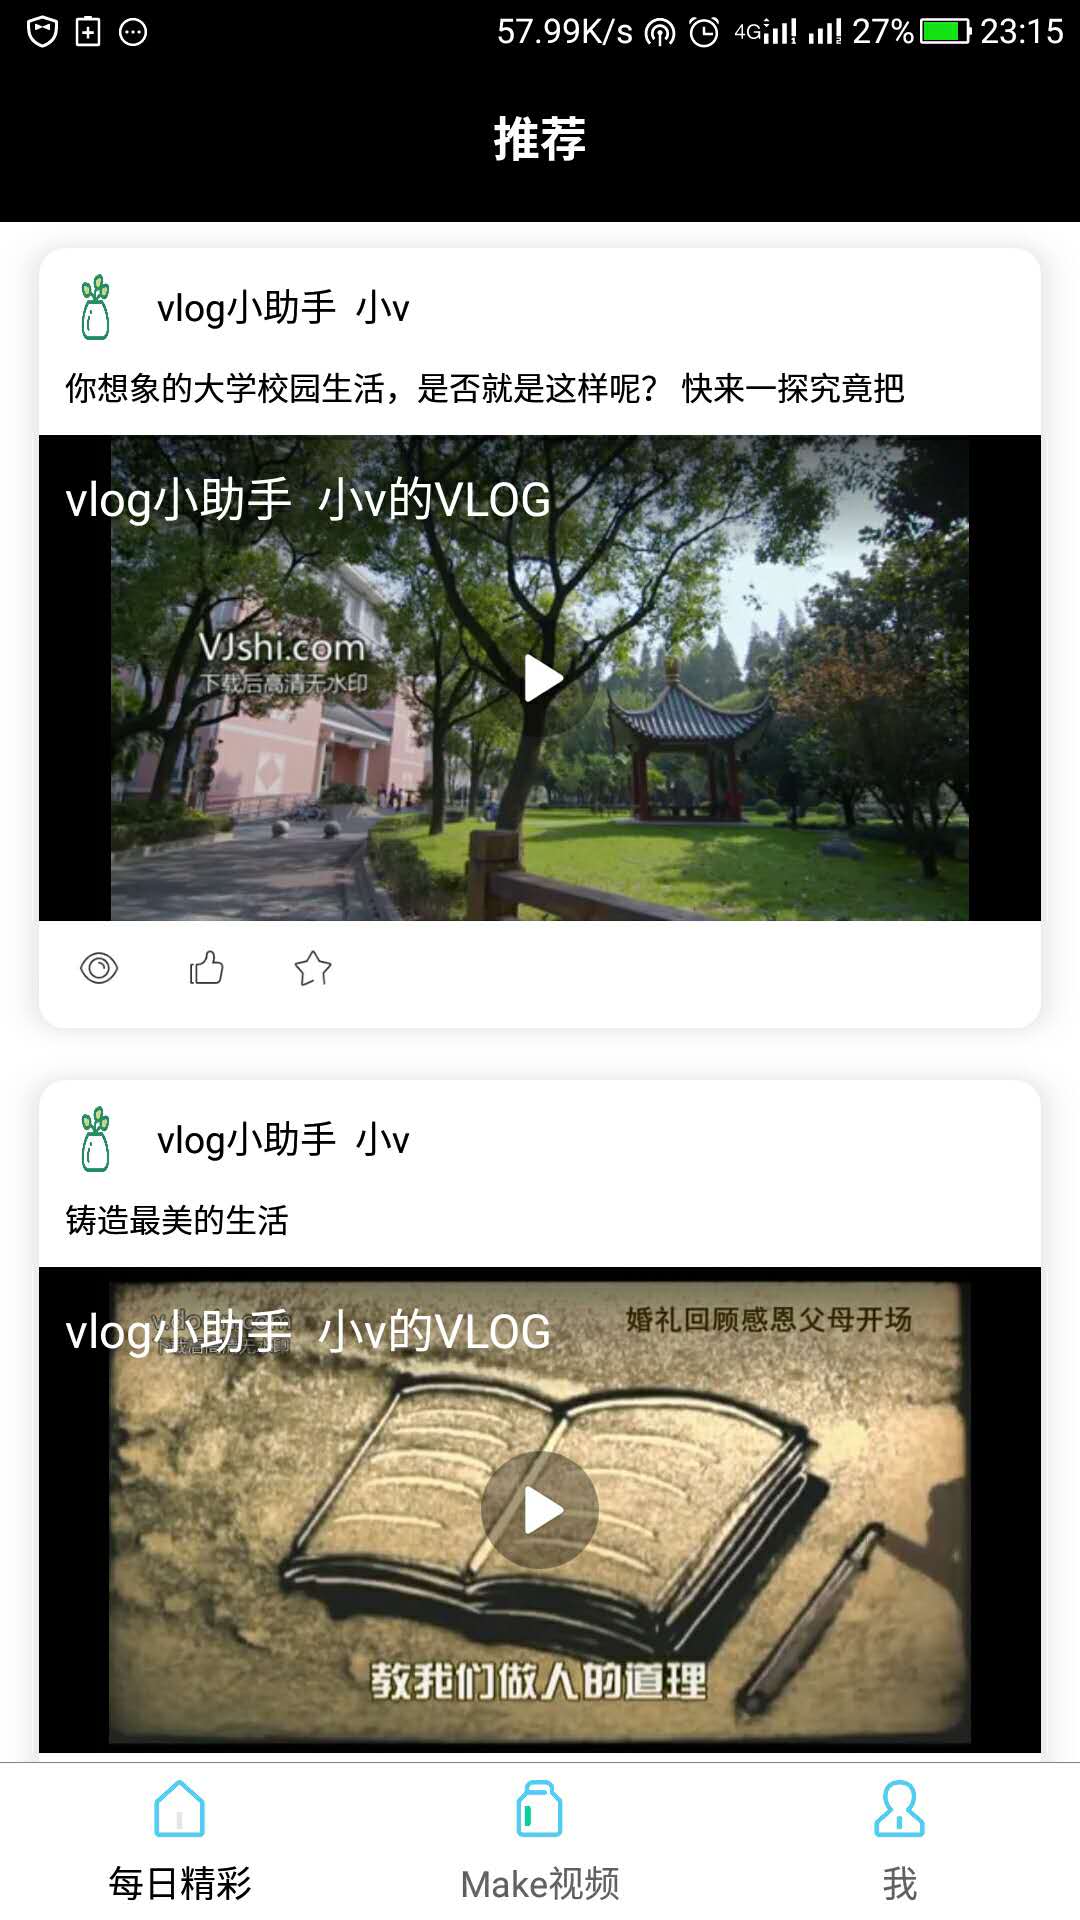 VLOG视频剪辑官方客户端 v0.1.1截图